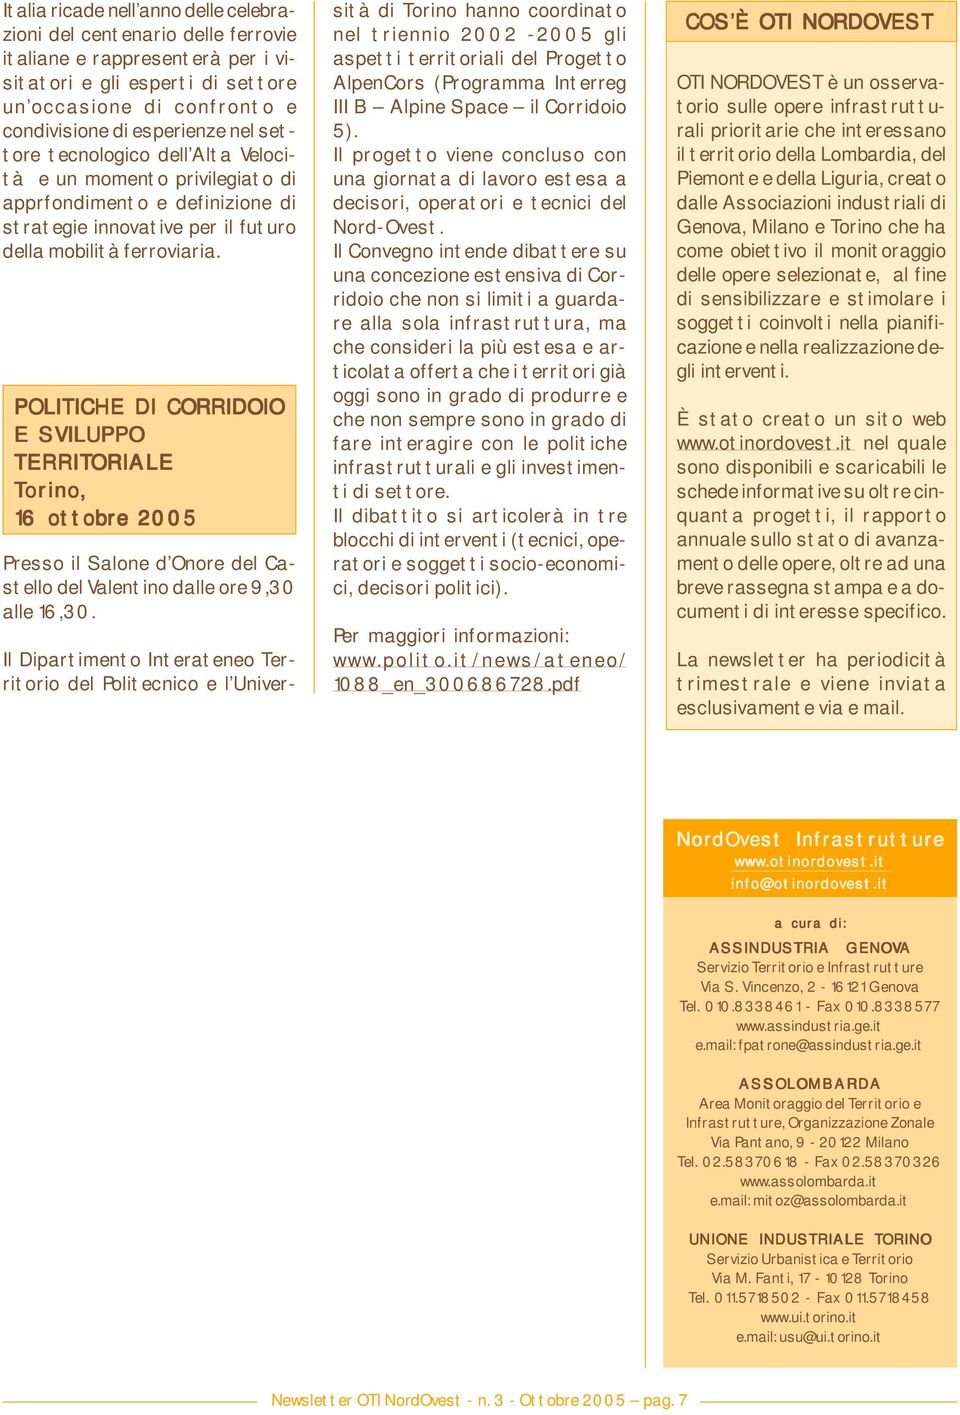 POLITICHE DI CORRIDOIO E SVILUPPO TERRITORIALE Torino orino, 16 ottobre 2005 Presso il Salone d Onore del Castello del Valentino dalle ore 9,30 alle 16,30.